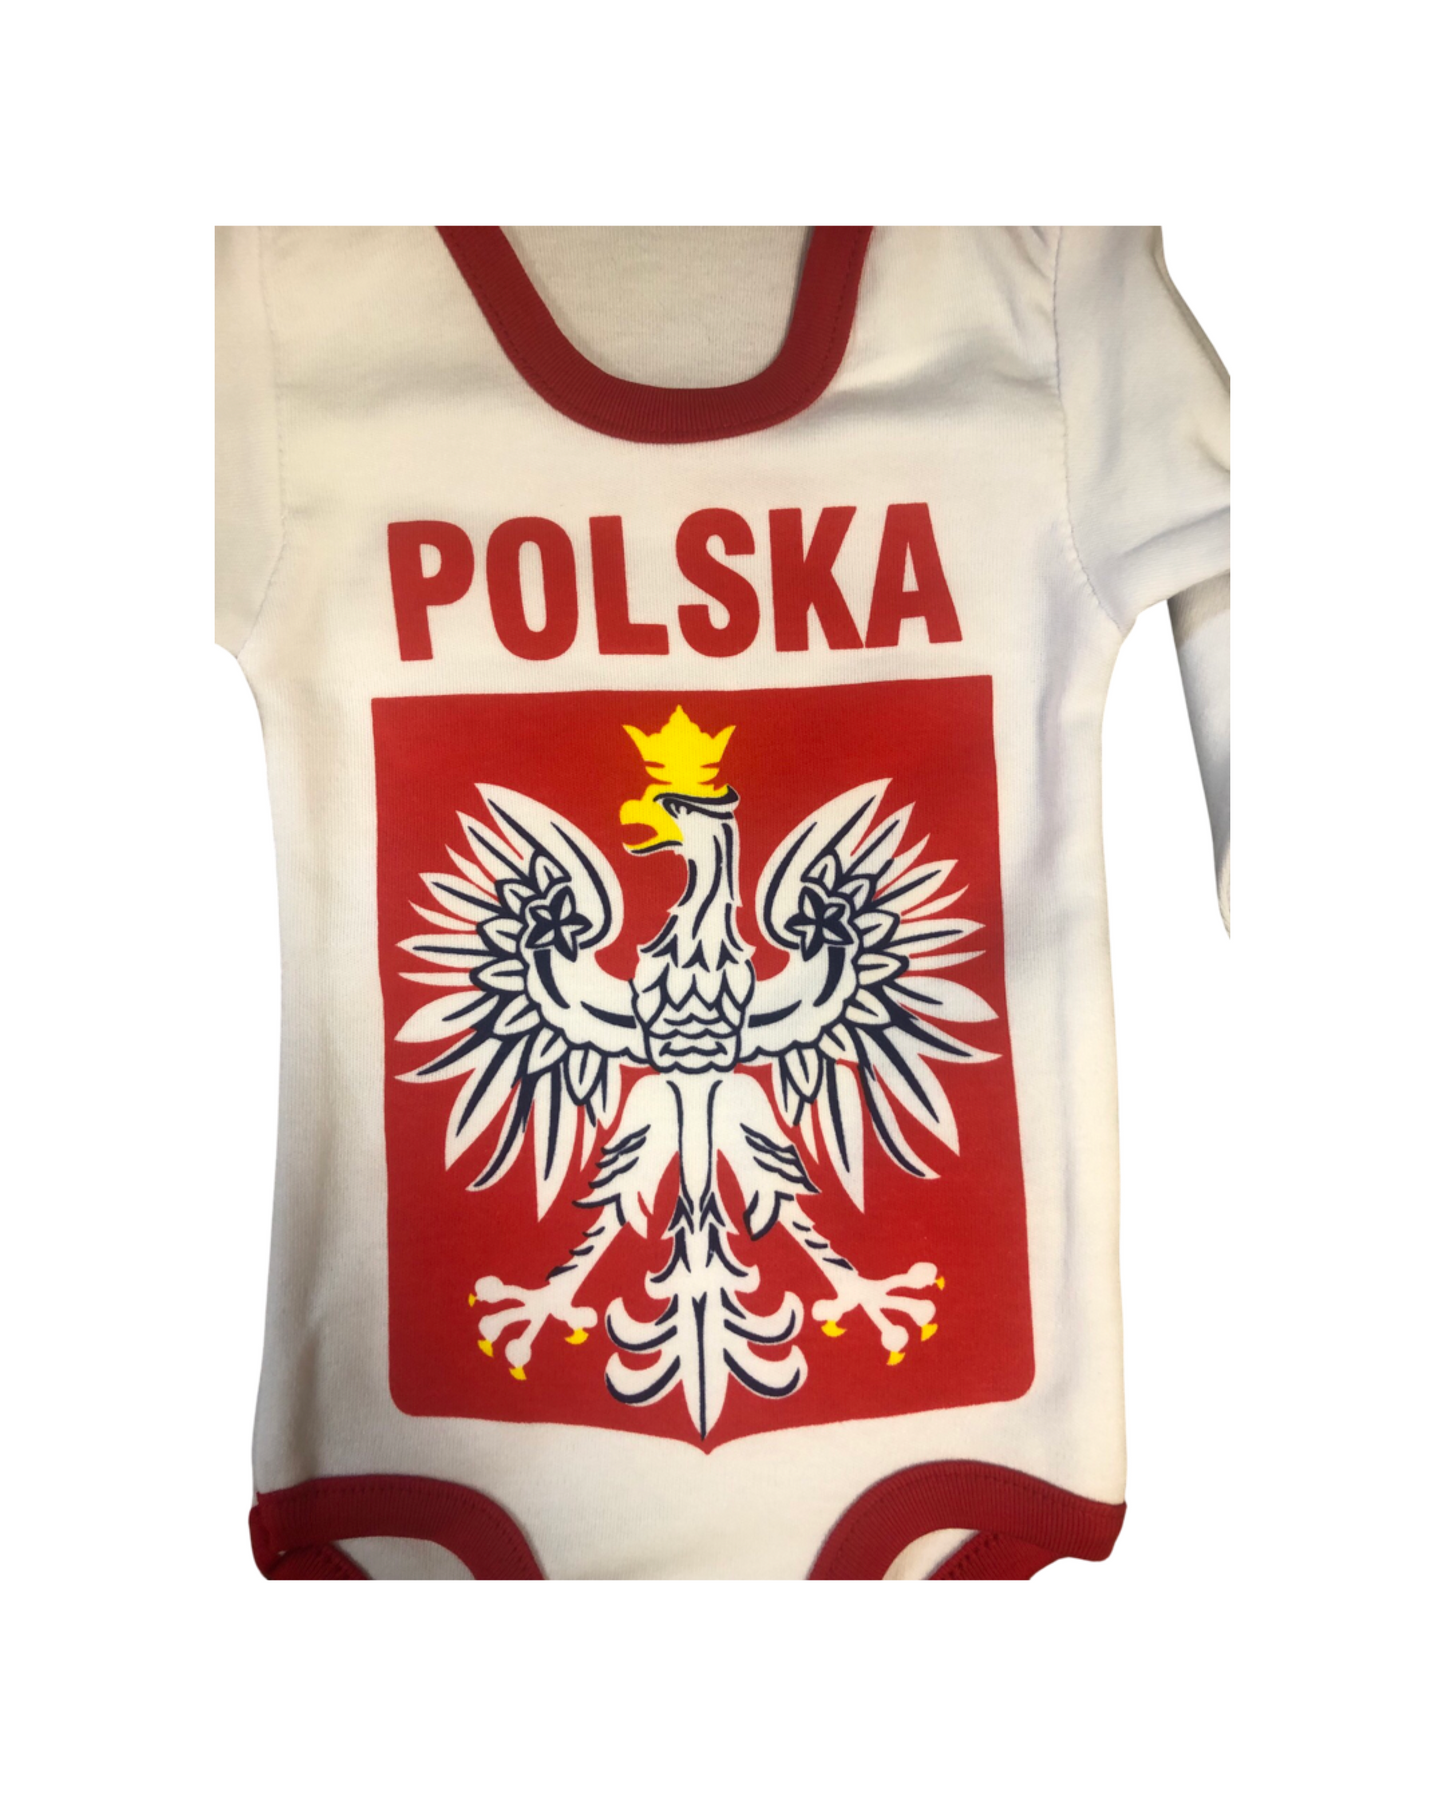 Polska Infant One-Piece Pajama